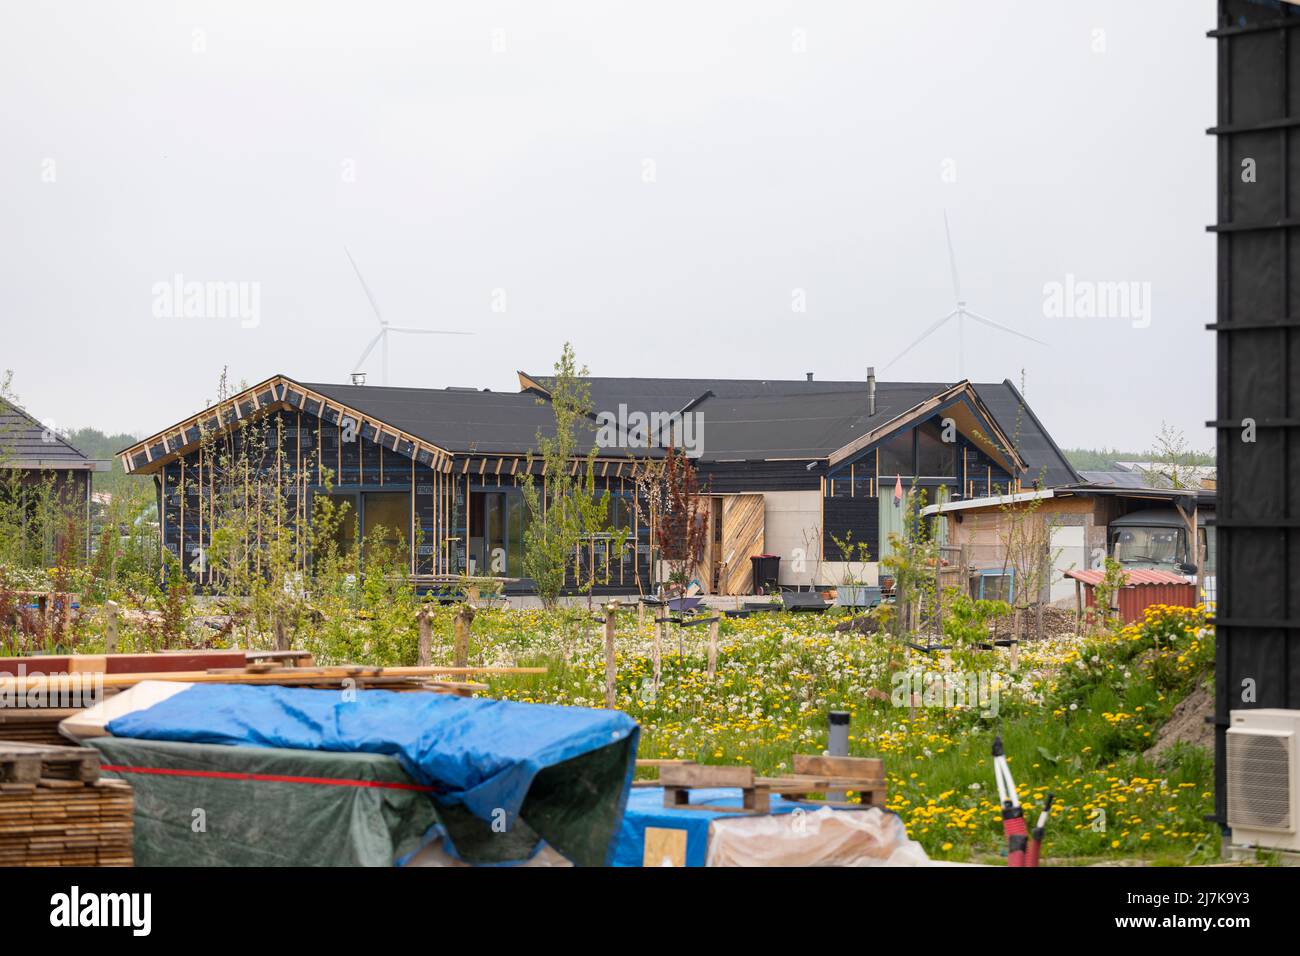 Se está construyendo una nueva casa ecológica en el pueblo ecológico de Oosterwold, Almere, Países Bajos Foto de stock